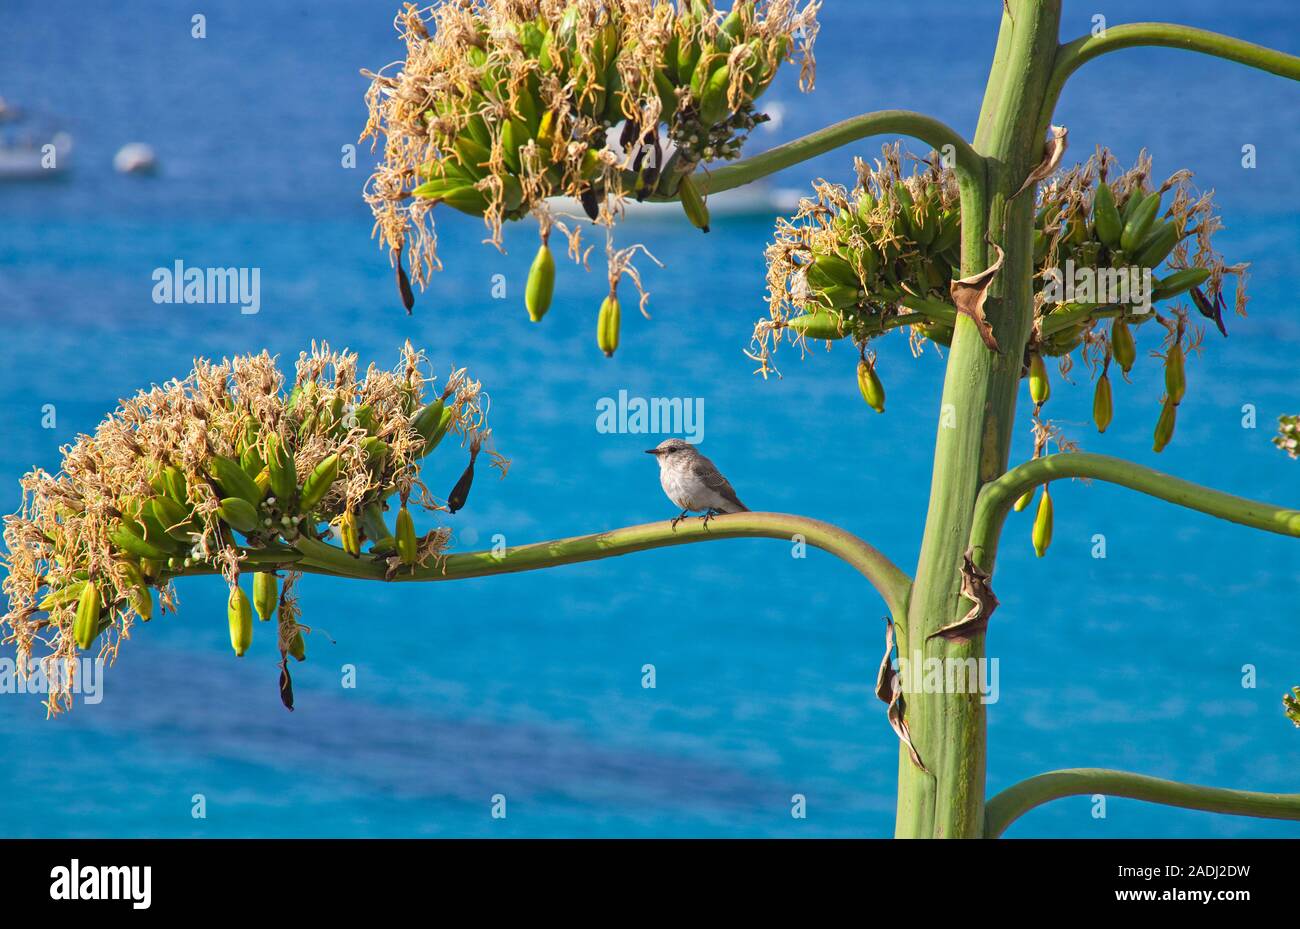 Petit oiseau posé sur la branche d'une Agave, plante, sentry maidenhair, maguey aloe ou American aloe (Agave americana), San Telmo, Mallorca, Espagne Banque D'Images